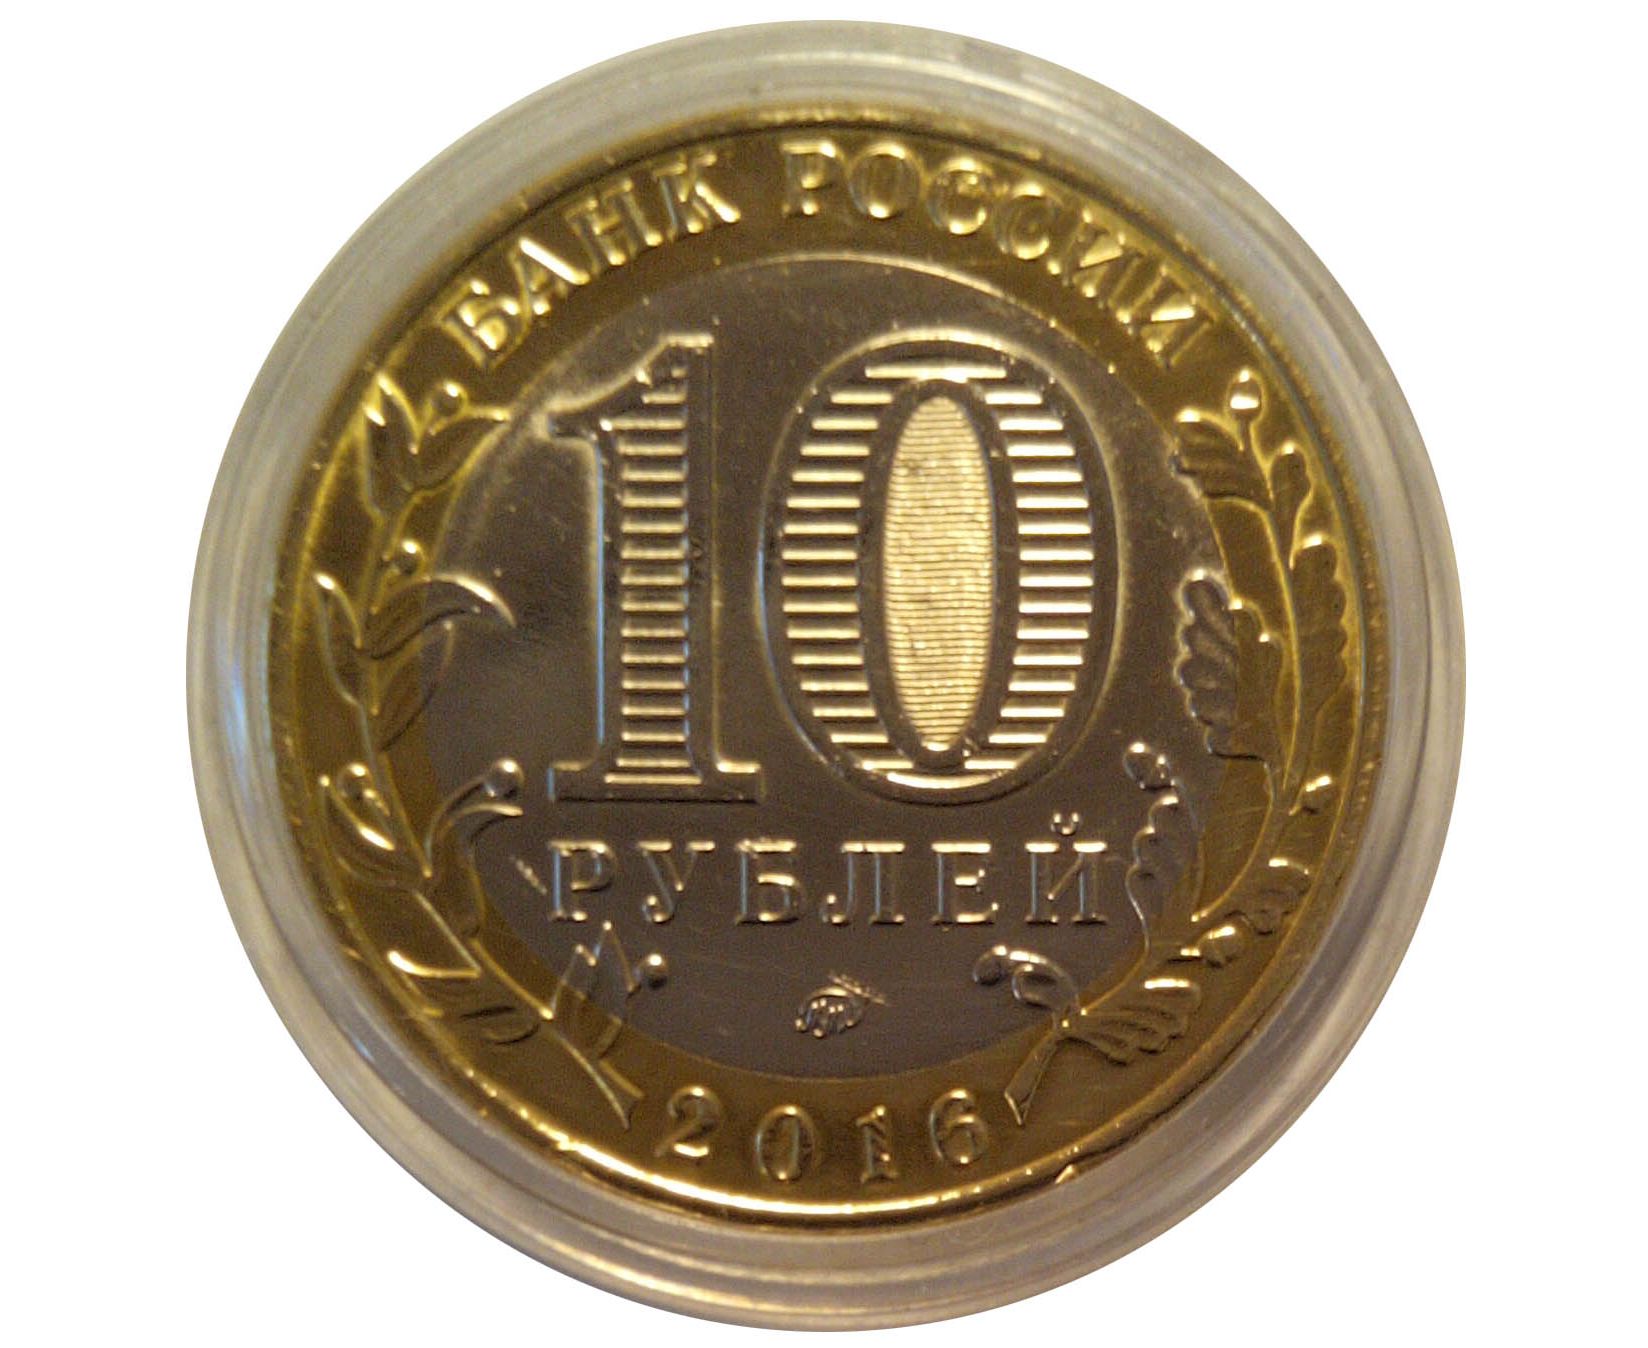 Сколько стоят 10 руб монеты